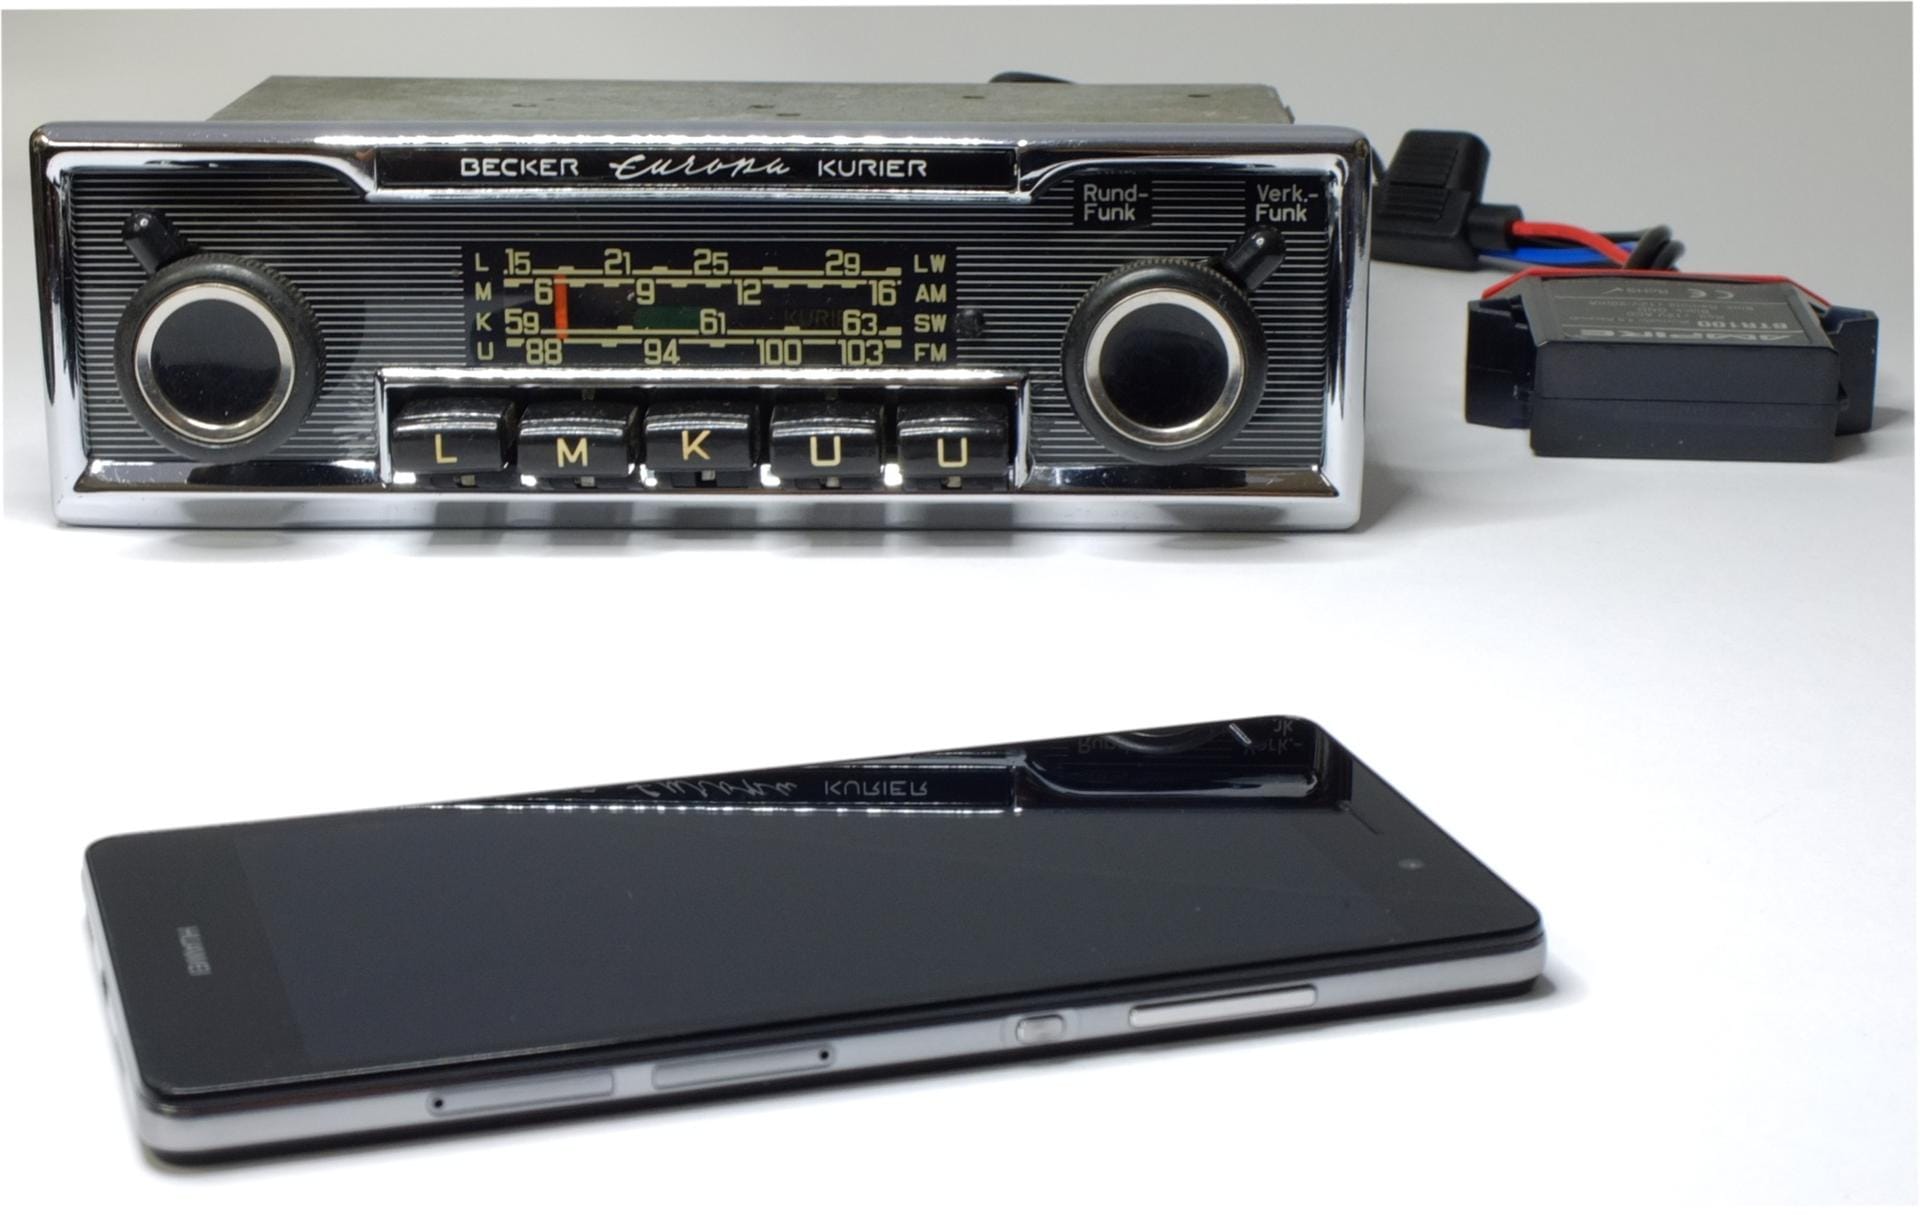 Das historische Becker-Radio hat Wallich mit einem unauffälligen Bluetooth-Adapter ausgestattet. Smartphones können so Musik auf der alten Anlage abspielen.